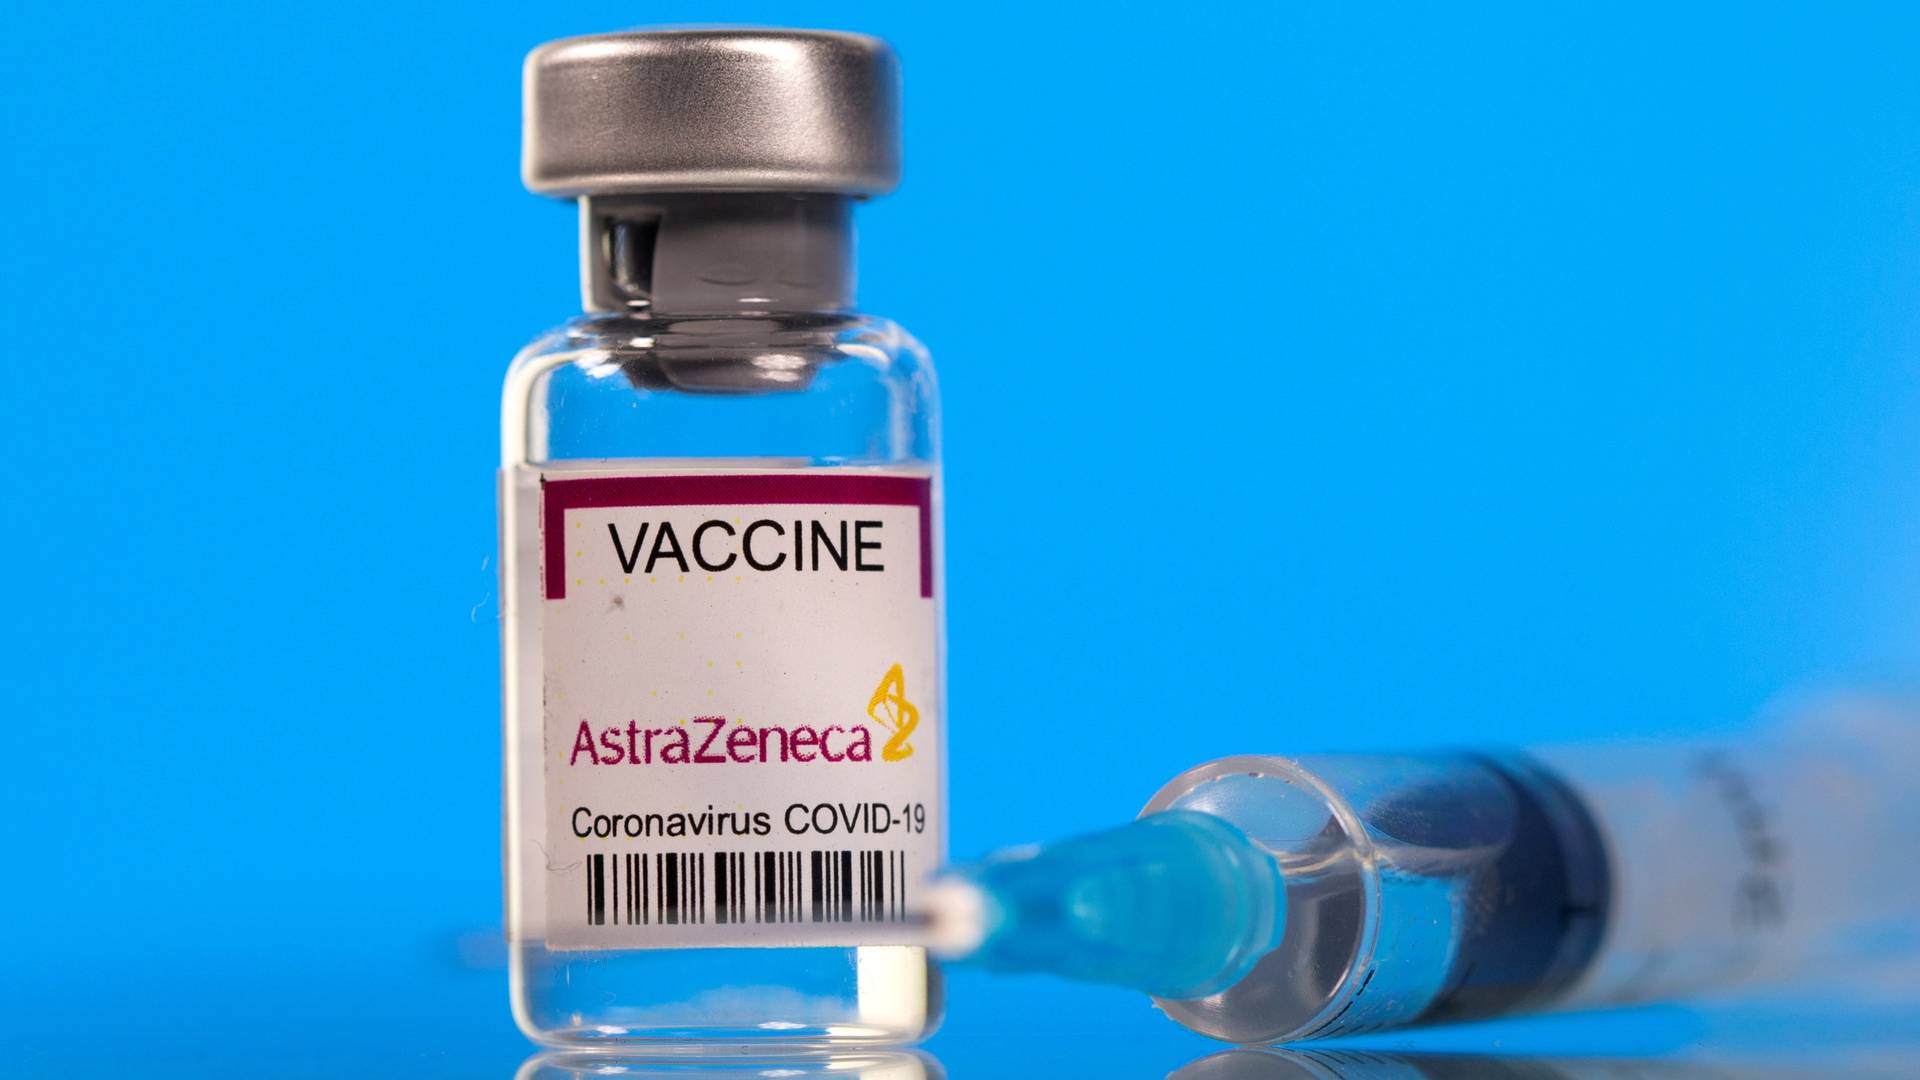 歐洲藥管局確認毛細血管滲漏綜合徵為阿斯利康疫苗副作用